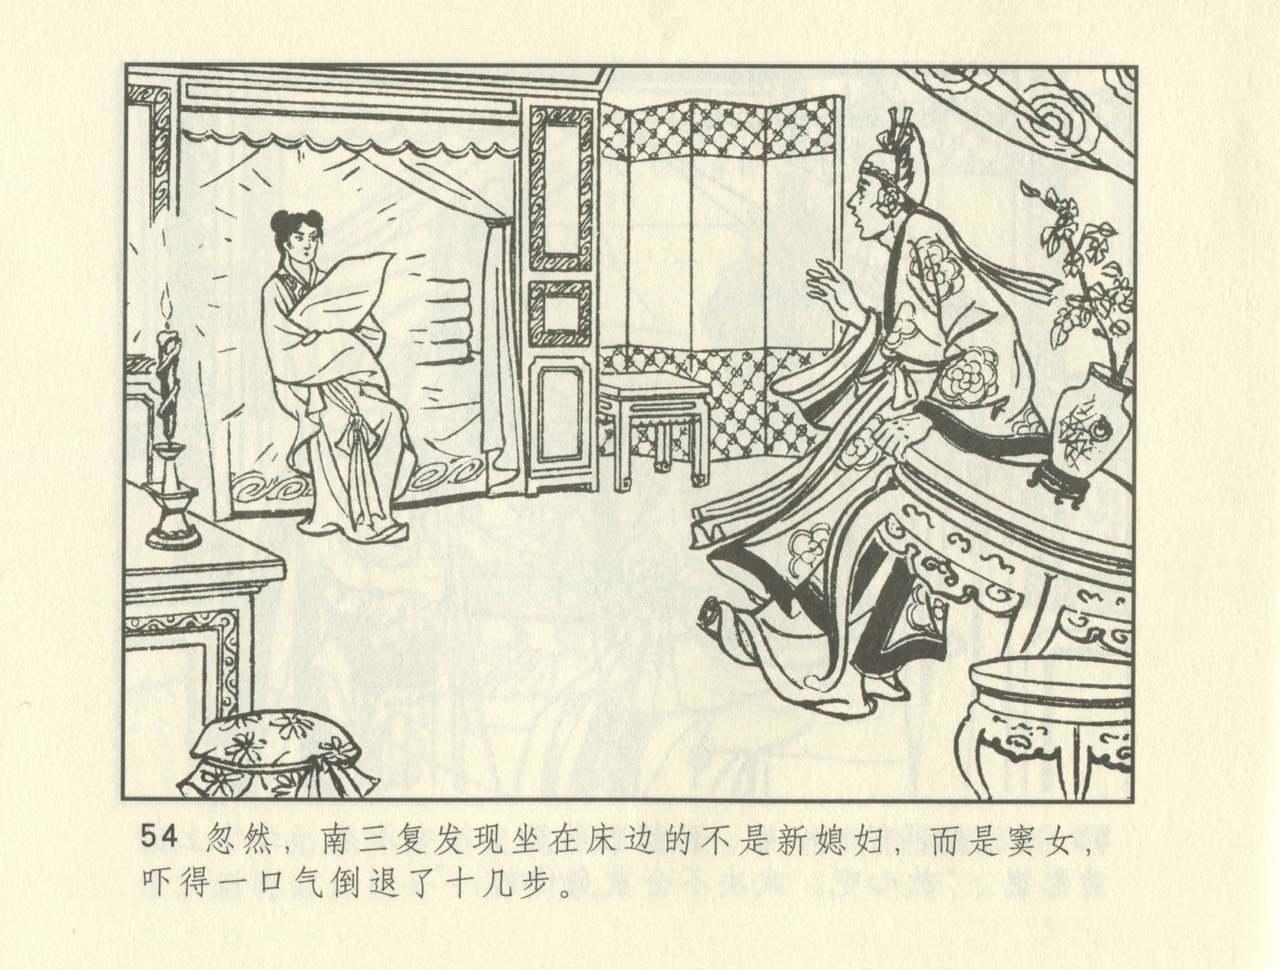 聊斋志异 张玮等绘 天津人民美术出版社 卷二十一 ~ 三十 263